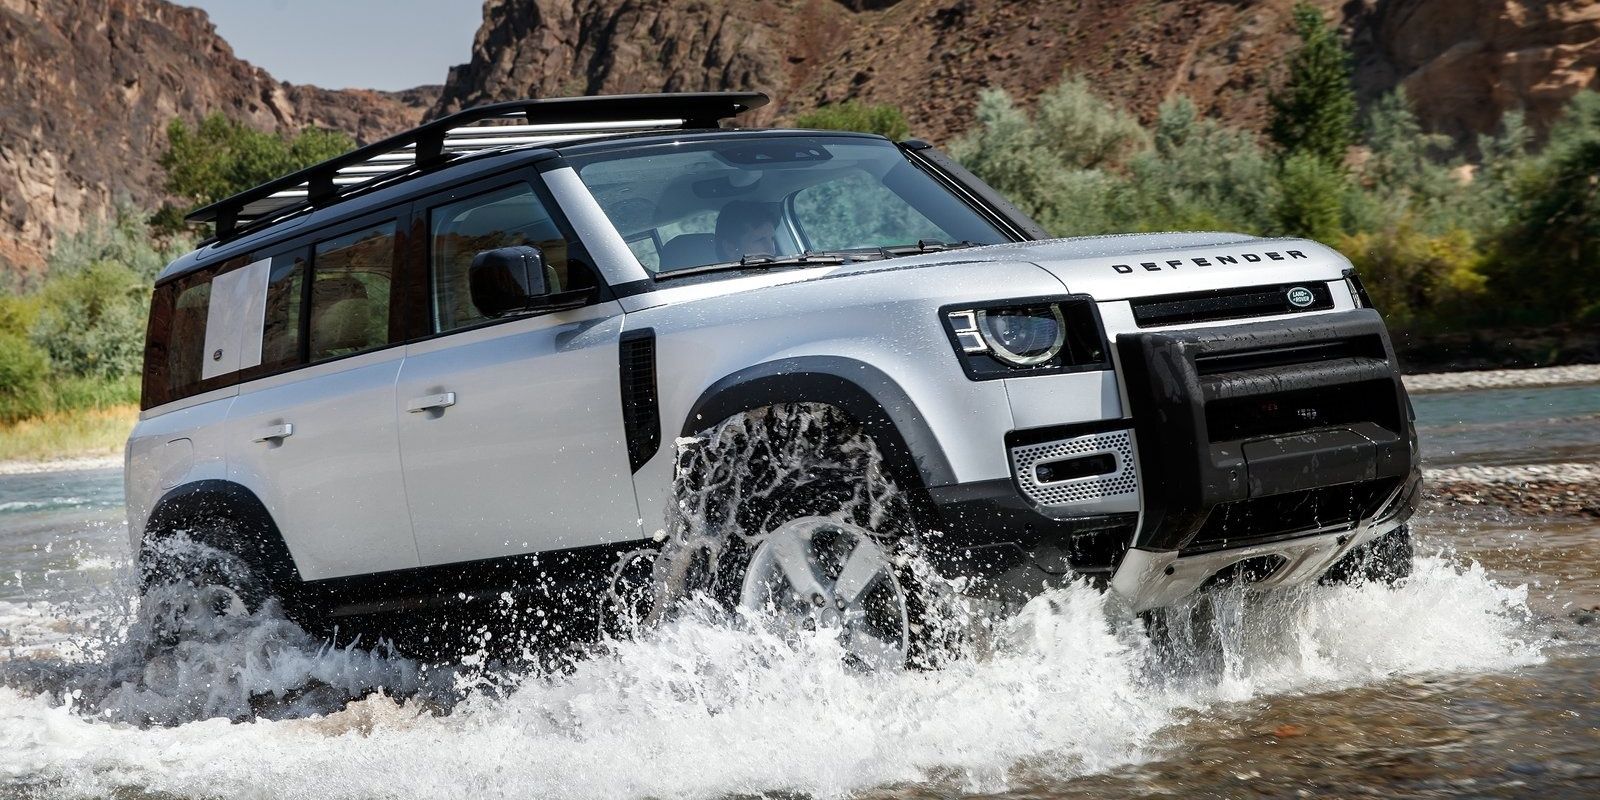 Land Rover Defender 110 wading